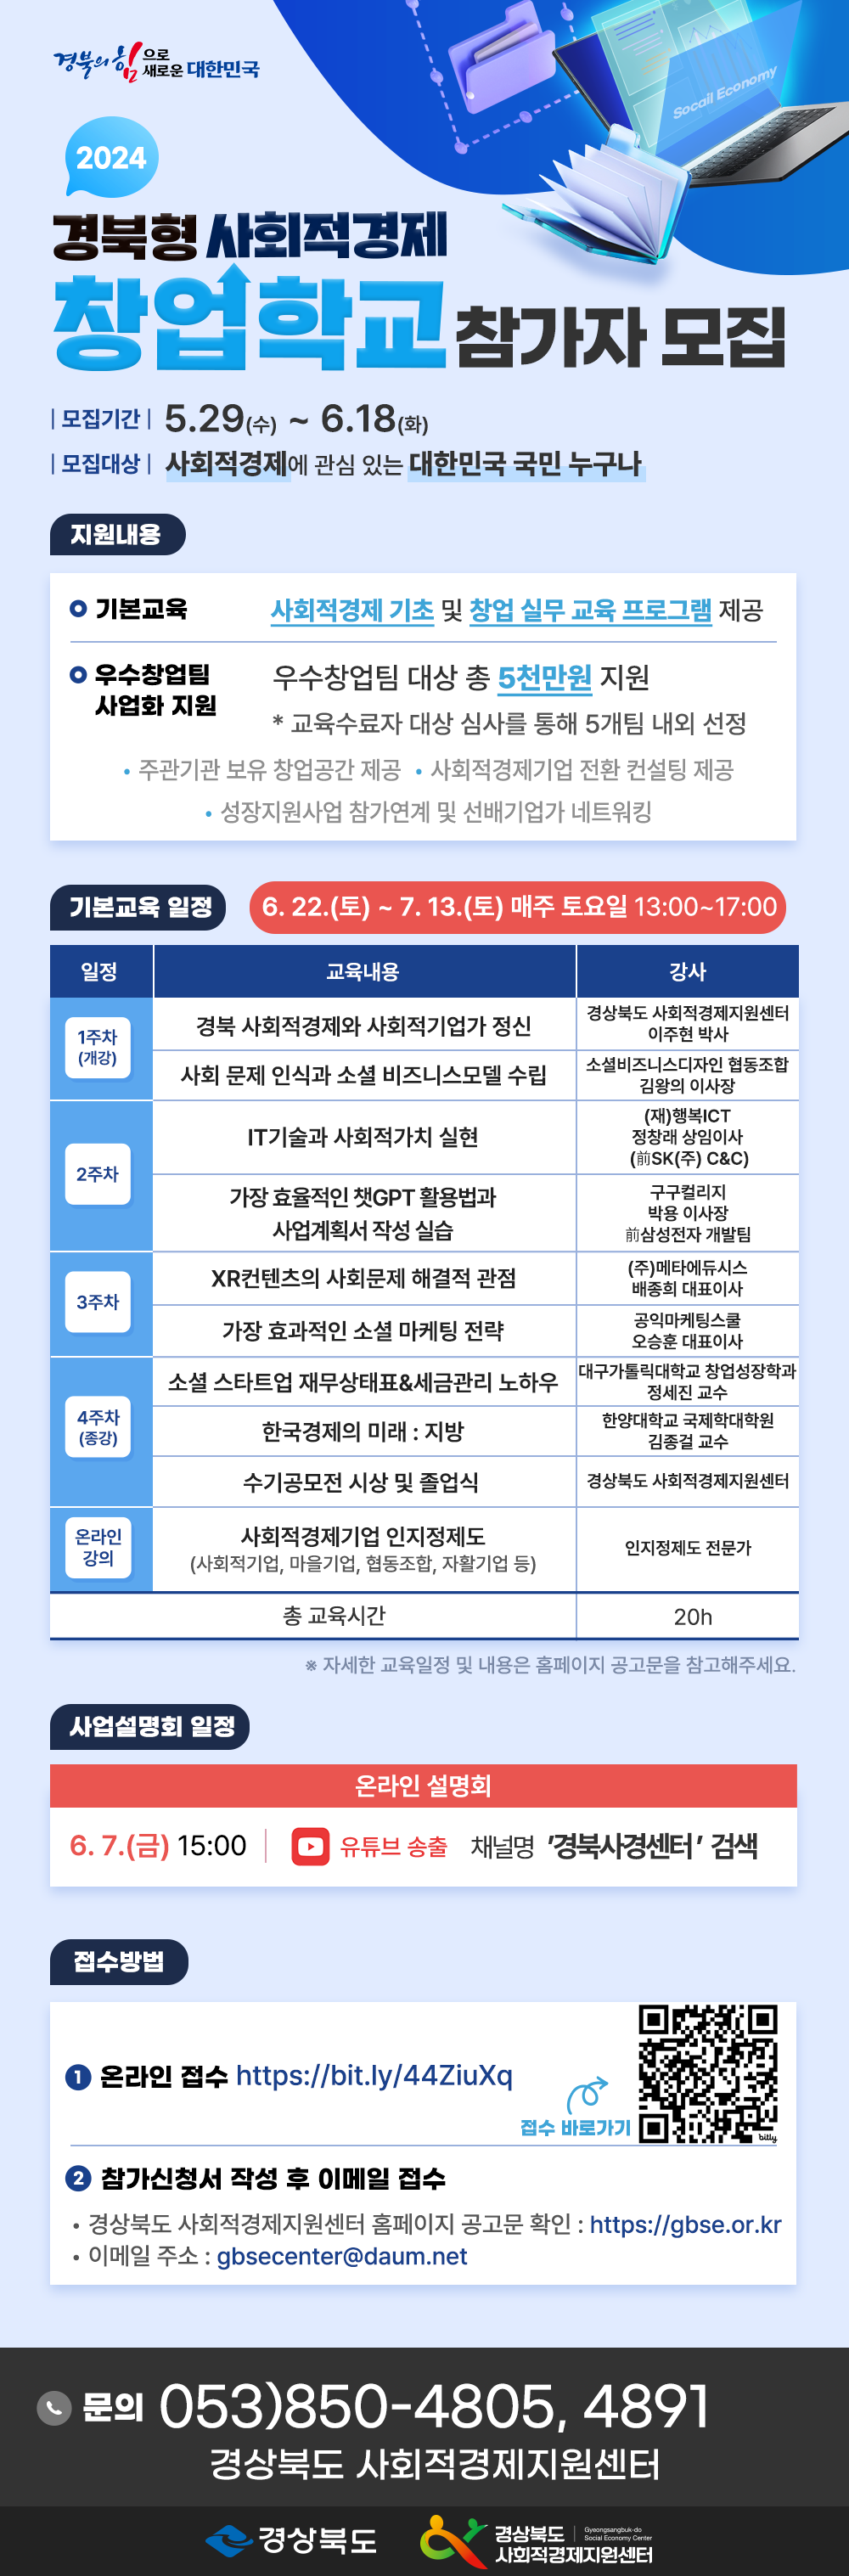 2024 경북형 사회적경제 창업학교 참가자 모집 홍보 2